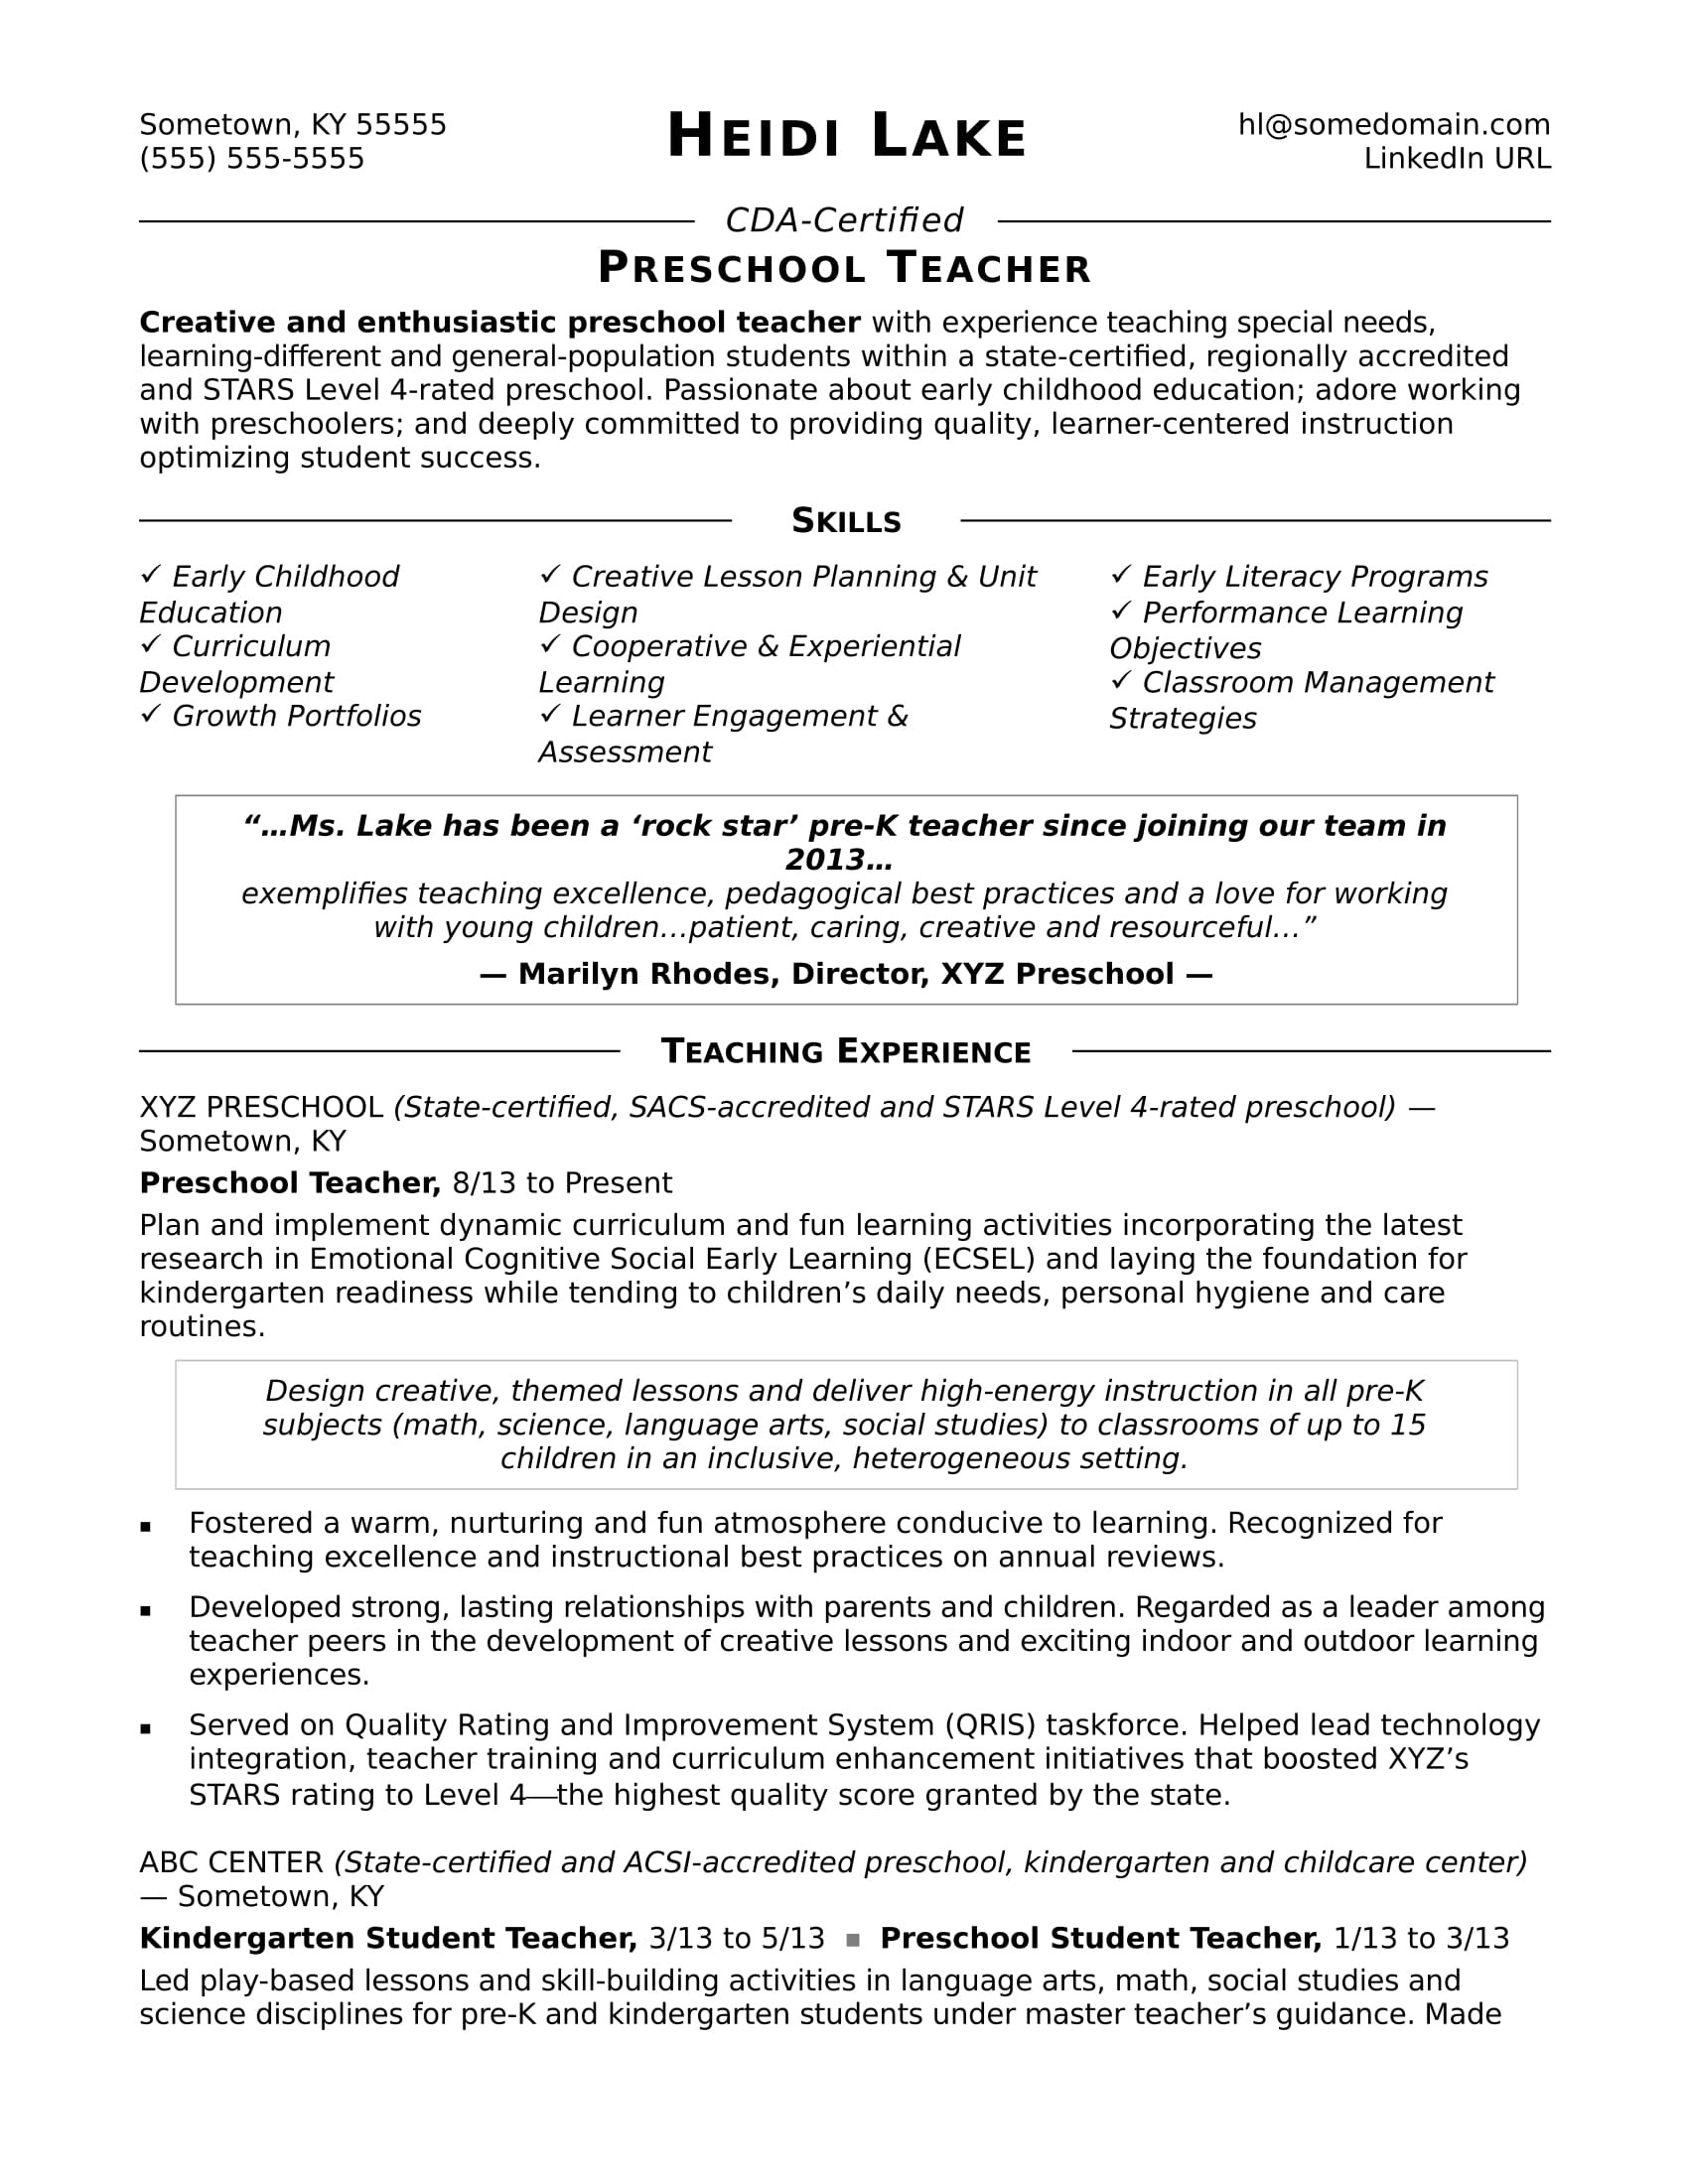 Sample Skills for Resume for Child Care Educator Preschool Teacher Resume Sample Monster.com